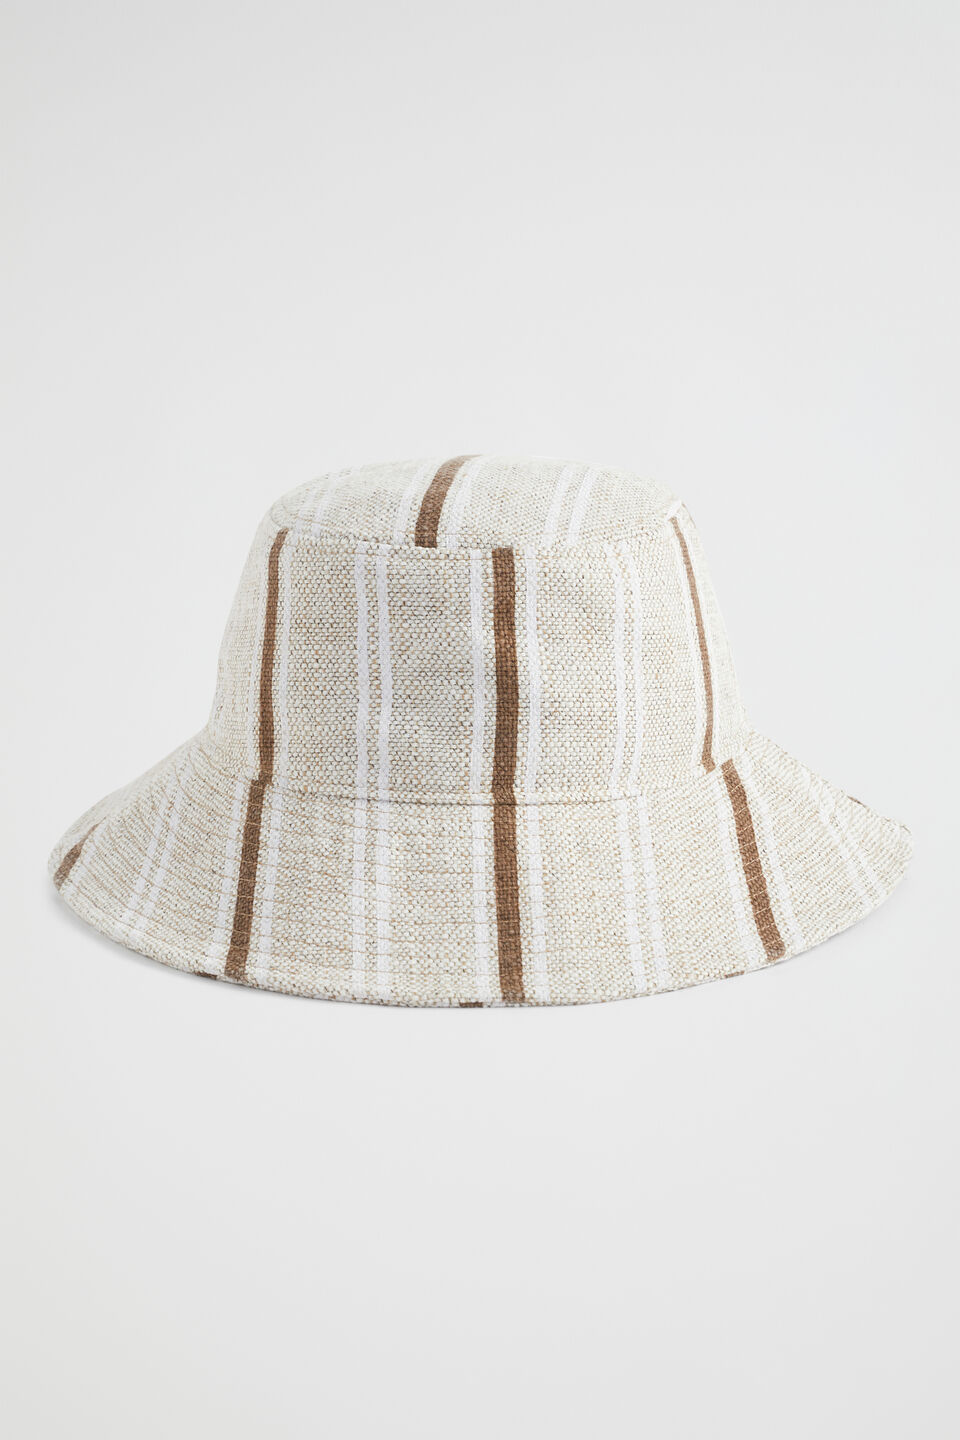 Seed Bucket Hat  Pecan Brown Stripe